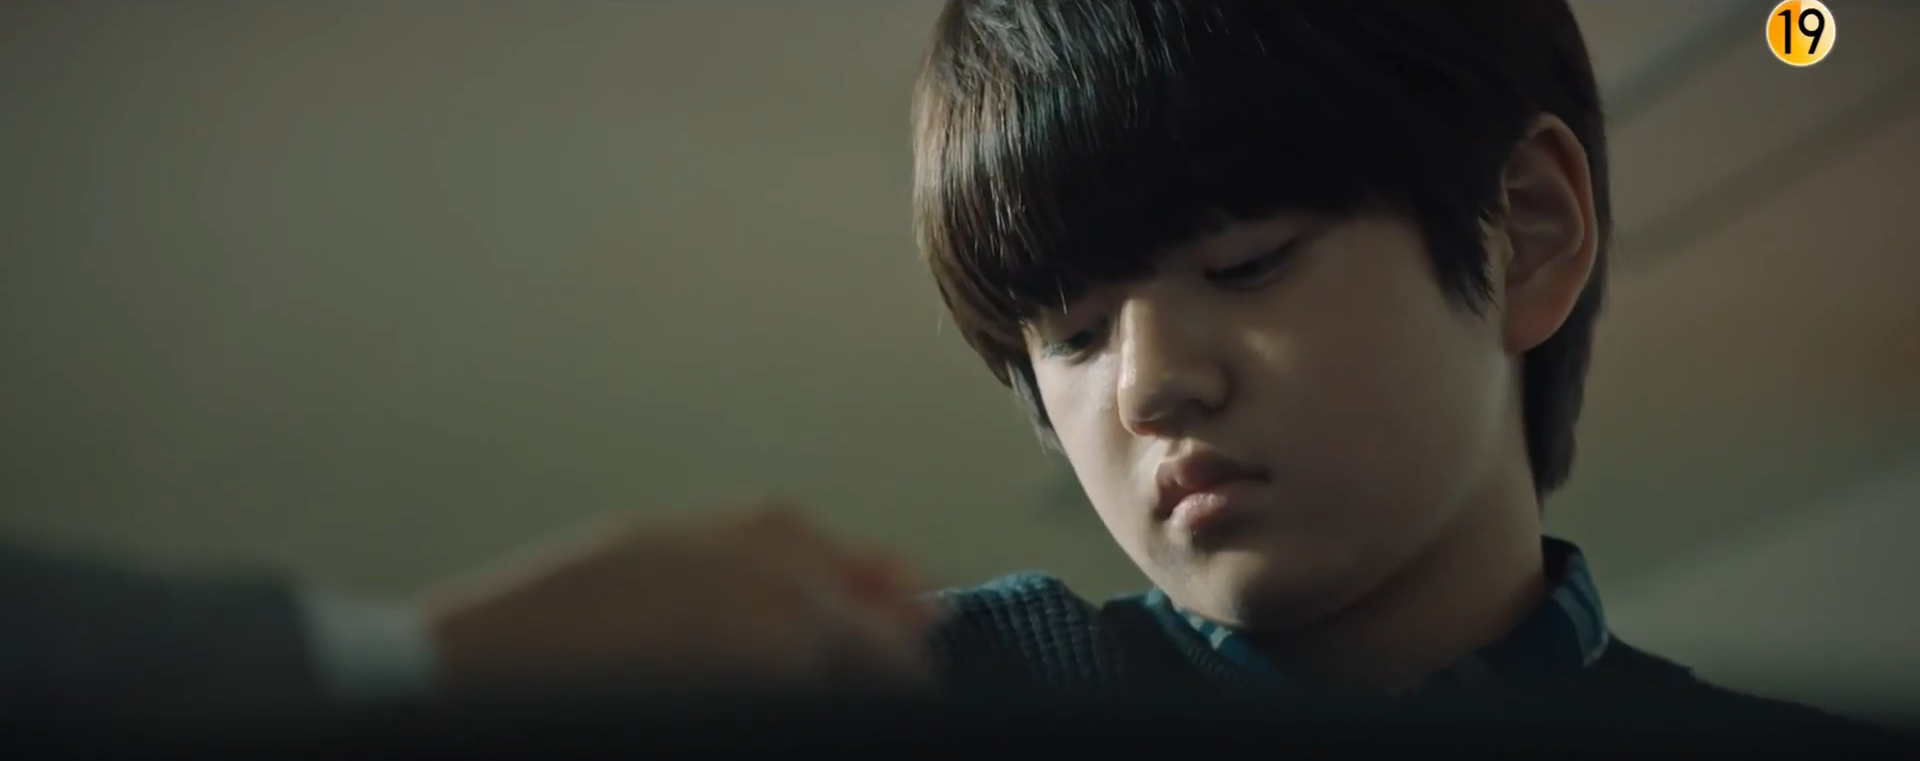 mouse korean drama review - strange boy